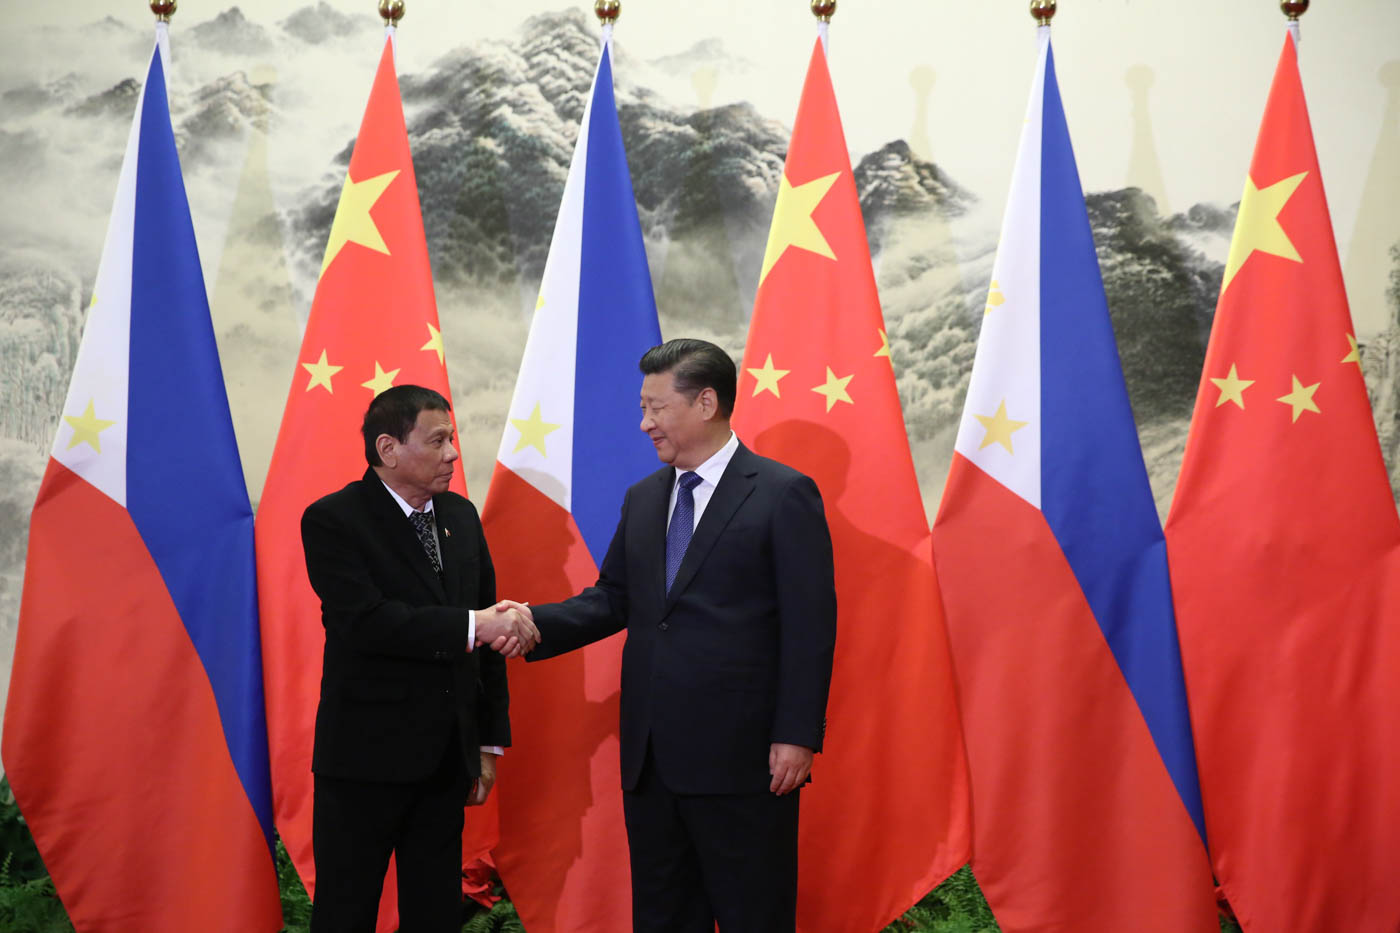 President_Duterte_handshake_with_President_Xi.jpg